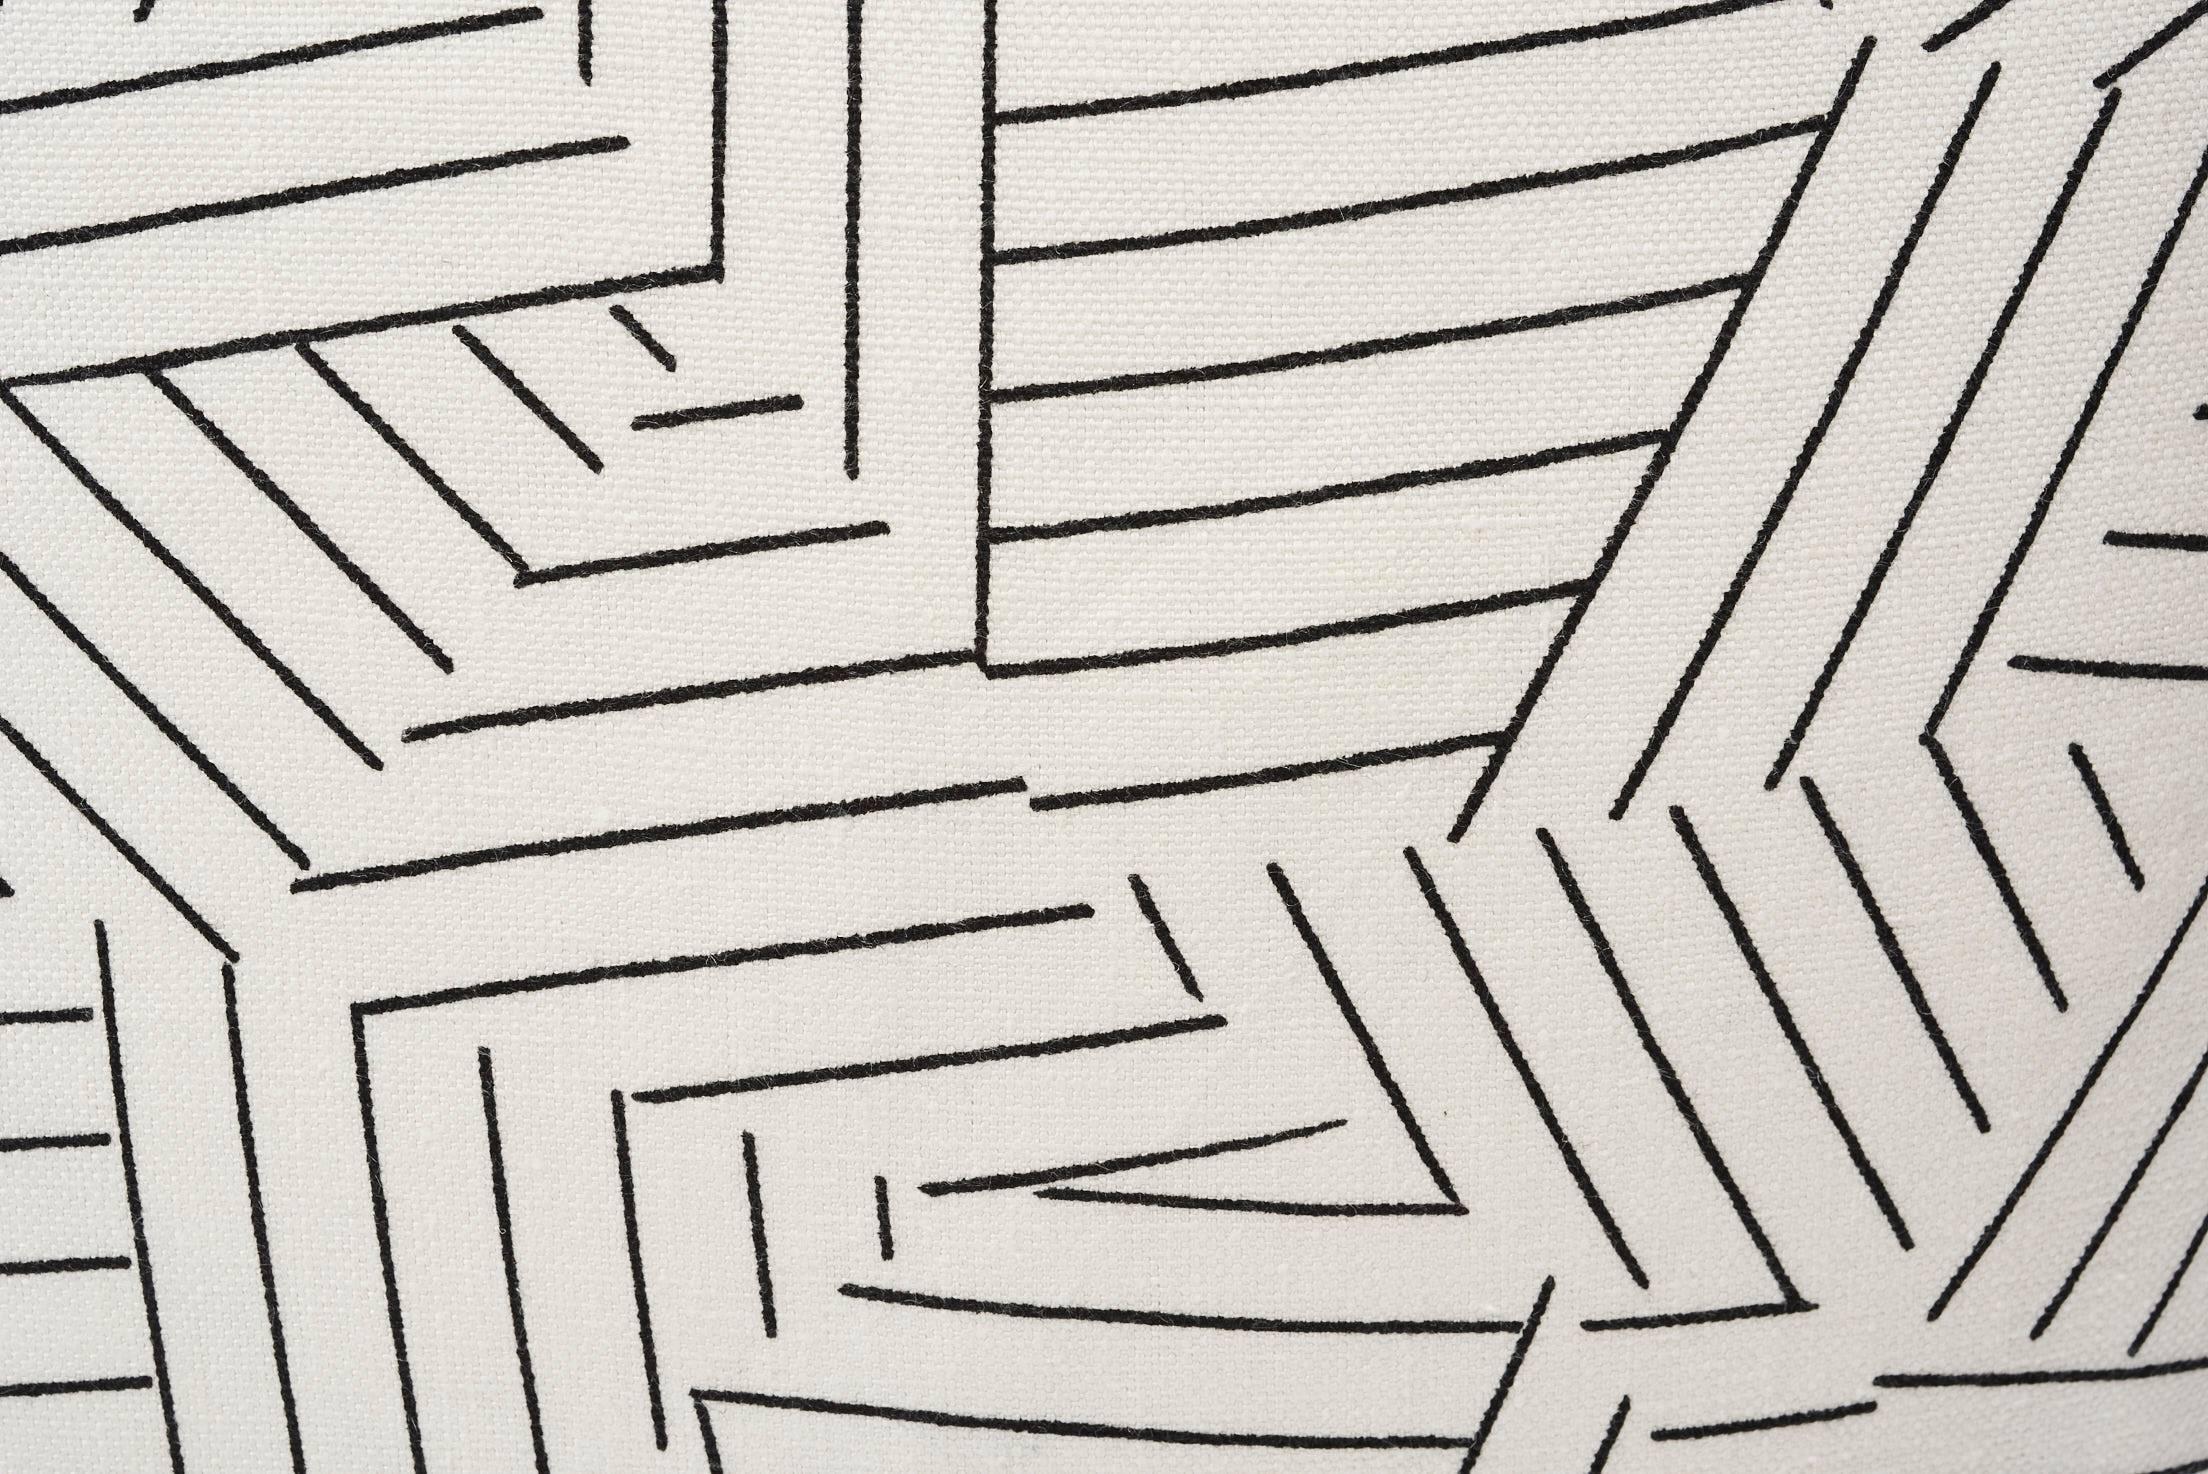 Der geometrische Druck Deconstructed Stripe ist eine Hommage an den legendären Dekorateur Albert Hadley und entstand in Zusammenarbeit mit Miles Redd. Der neu gestaltete Schumacher-Streifen setzt einen modernen und zeitgenössischen Akzent. Als